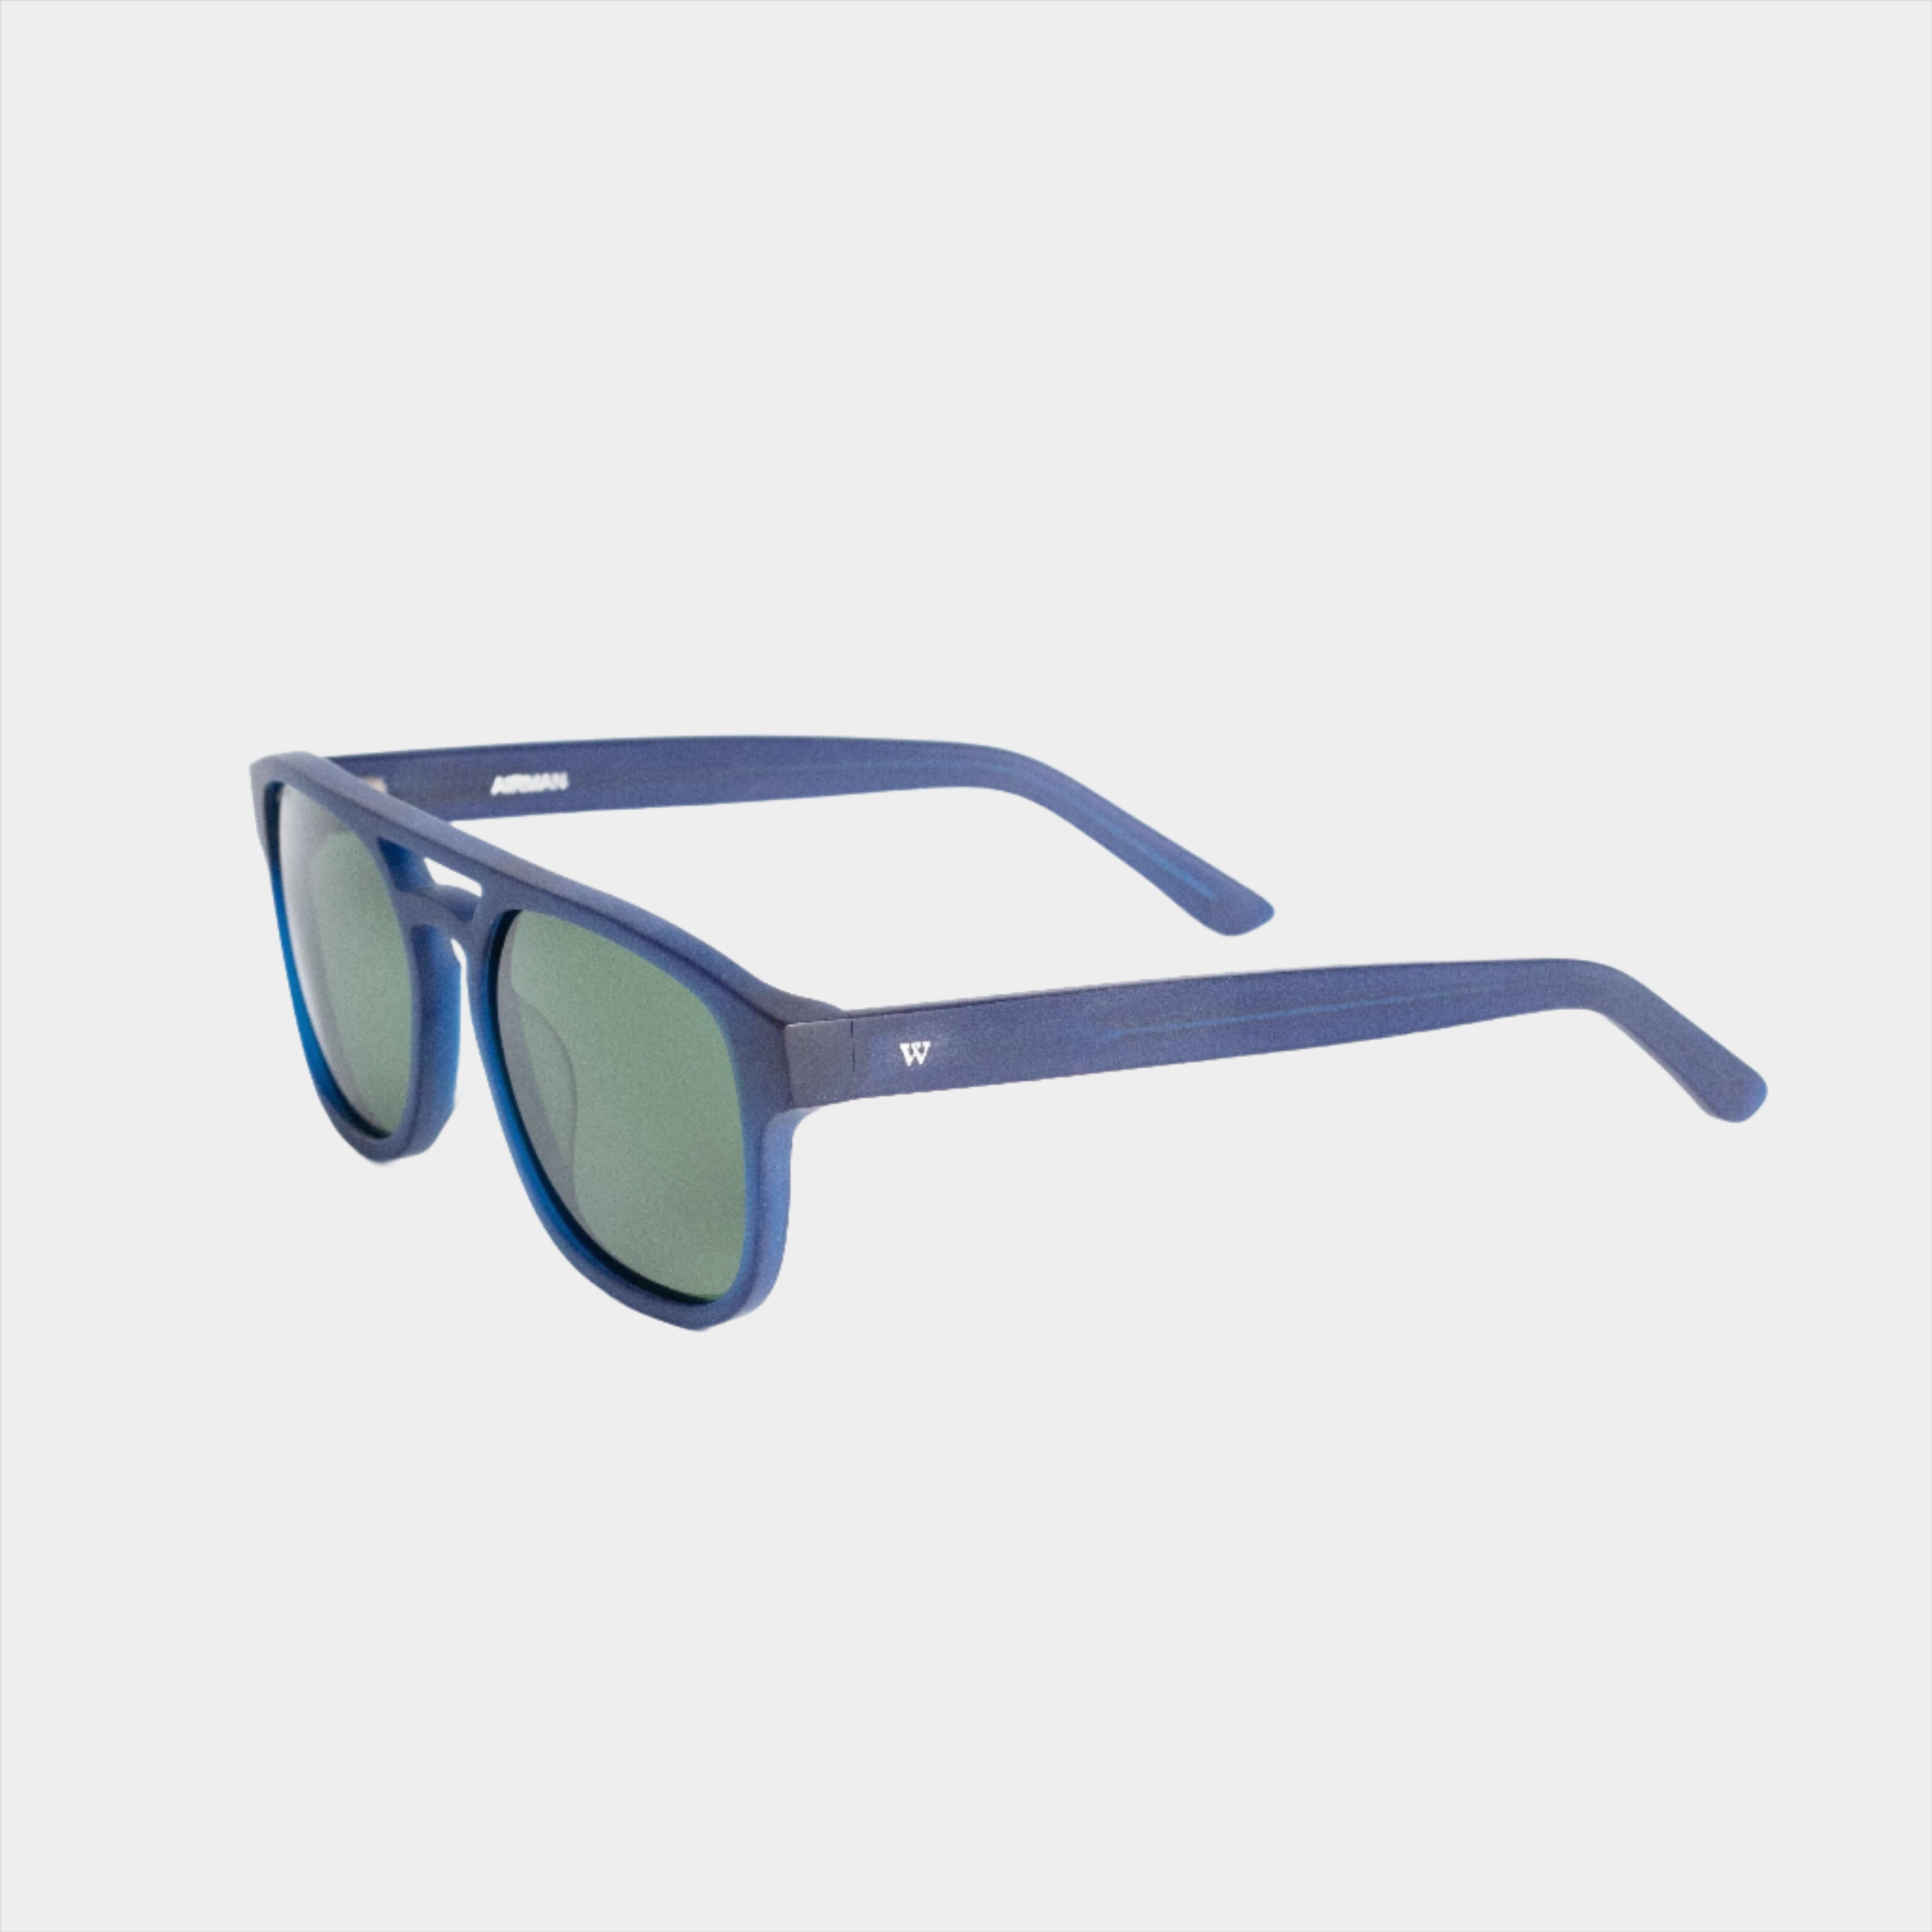 Walter Hill Sunglasses Matte Blue / Standard / Polarized Cat.3 AIRMAN - Matte Blue